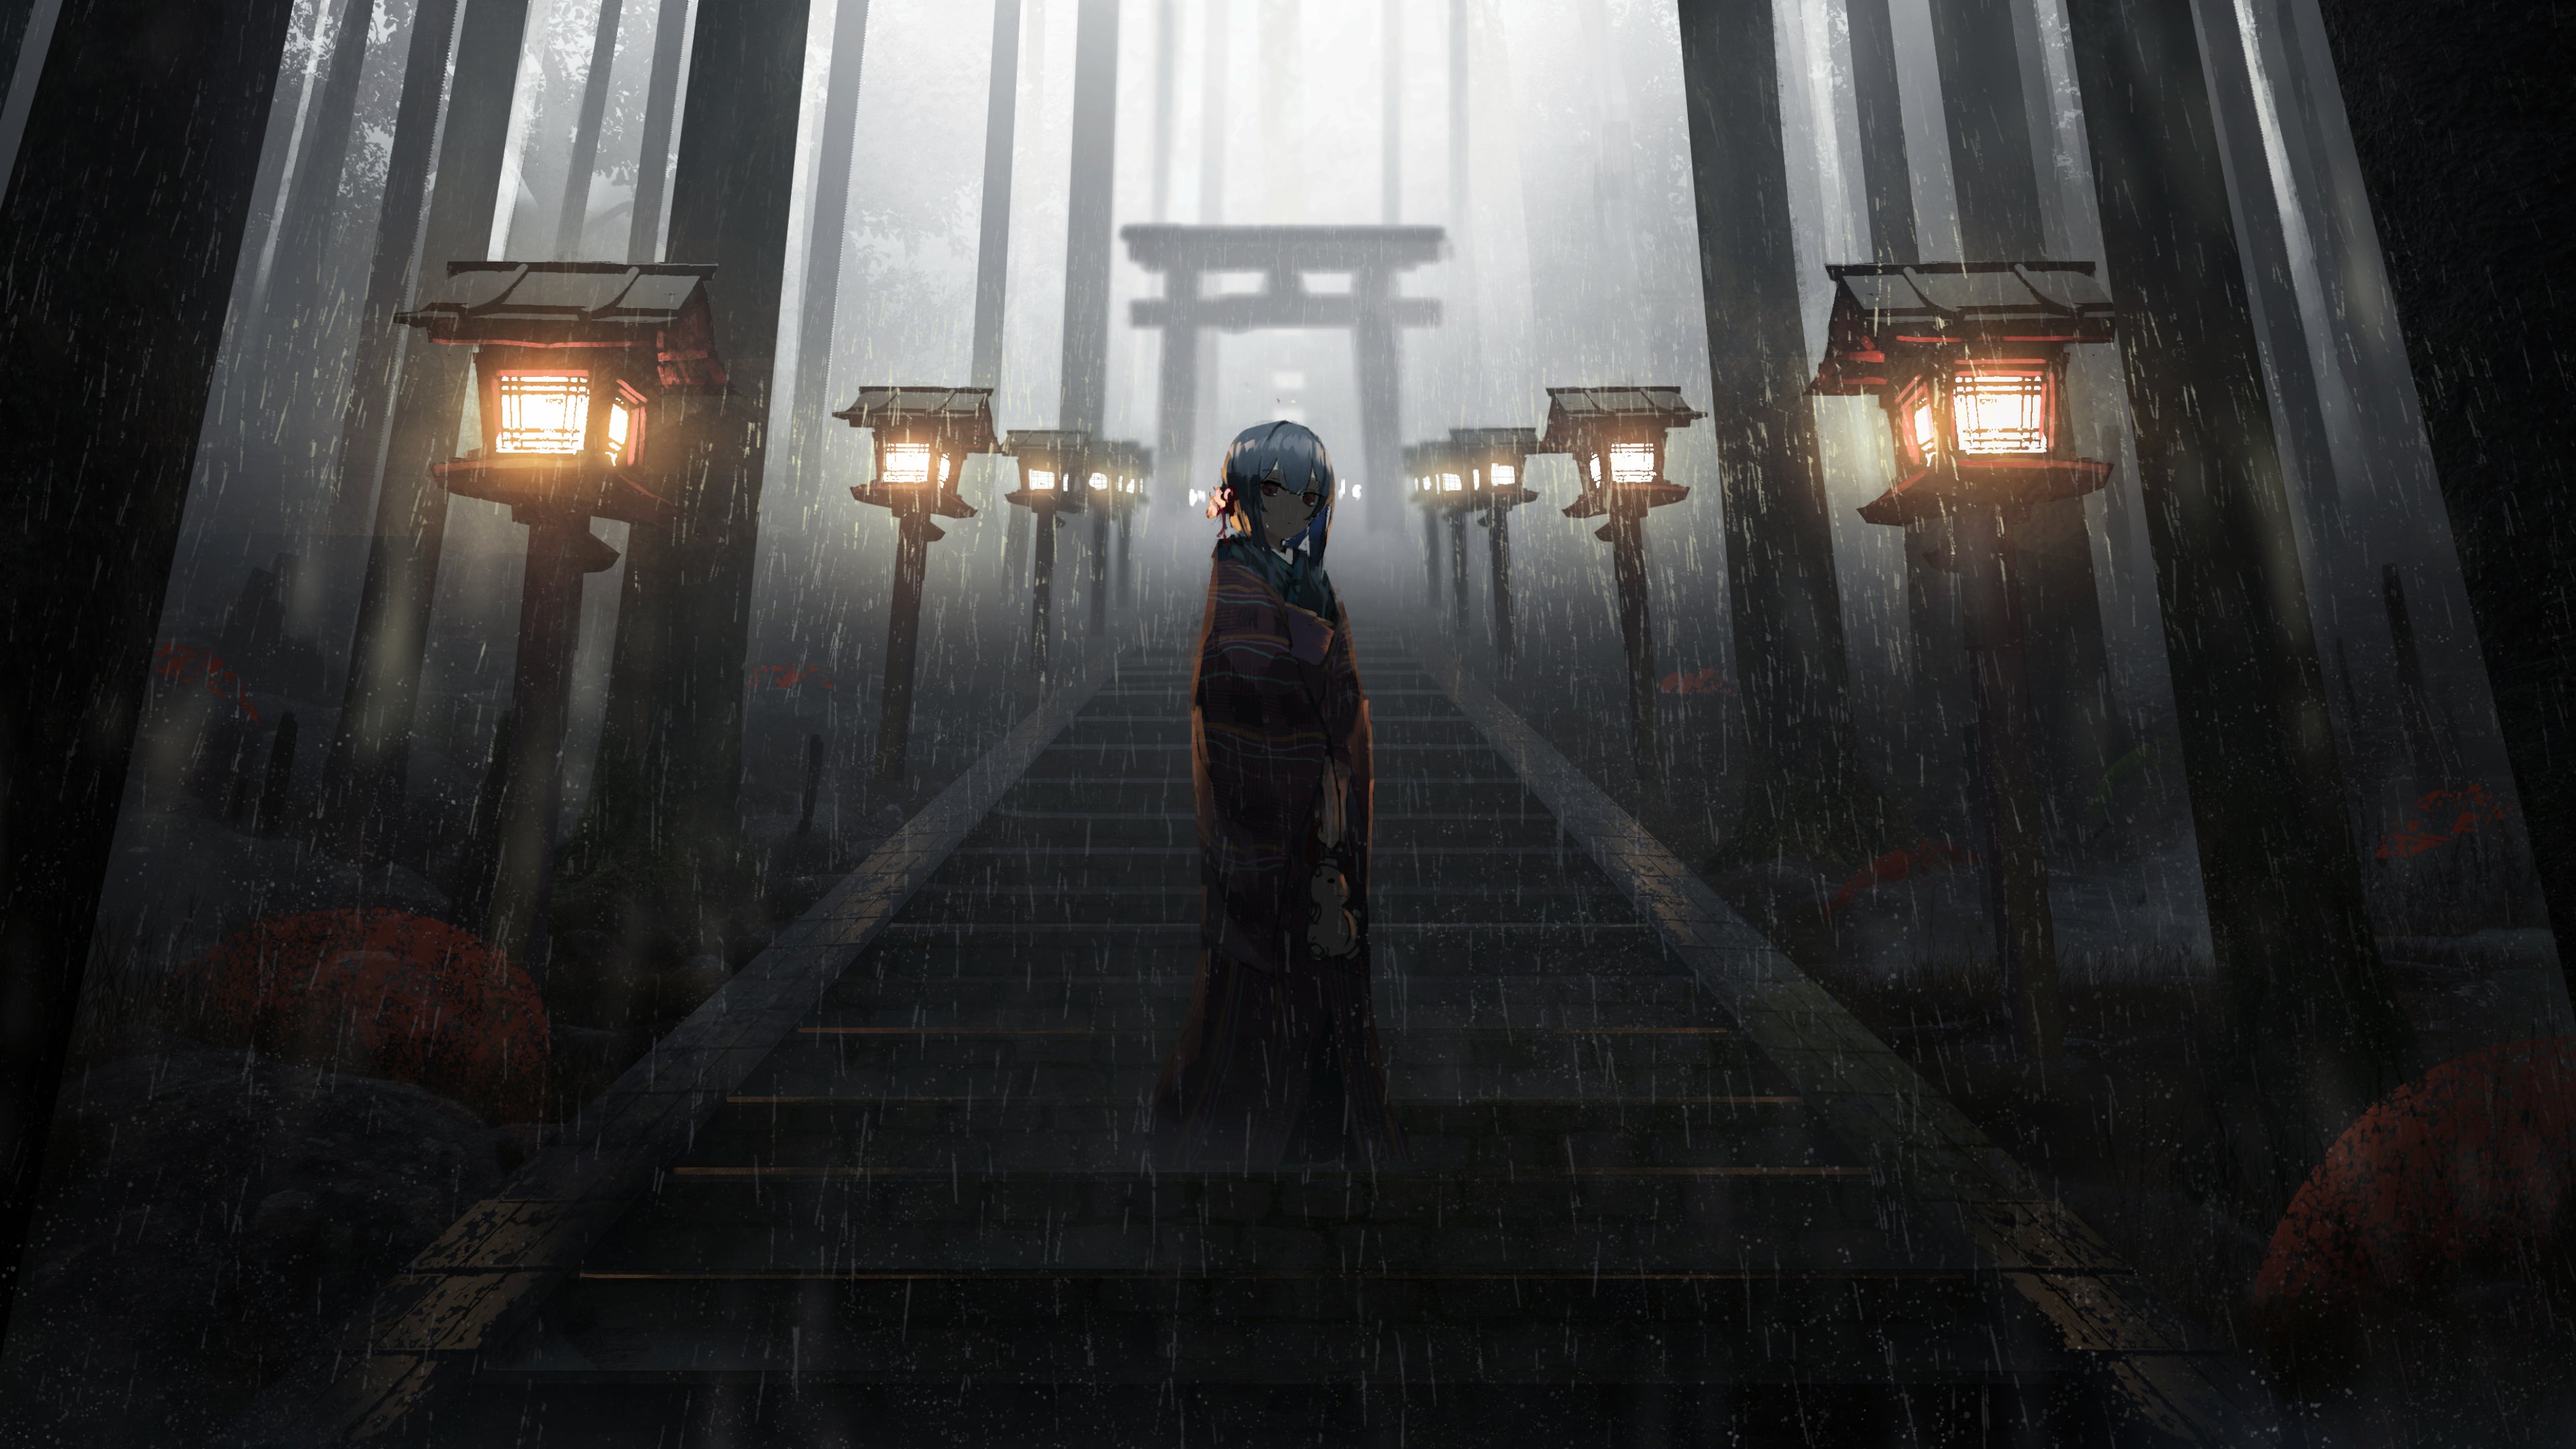 Anime Girl Standing in Rain inside Torii [3840x2160]